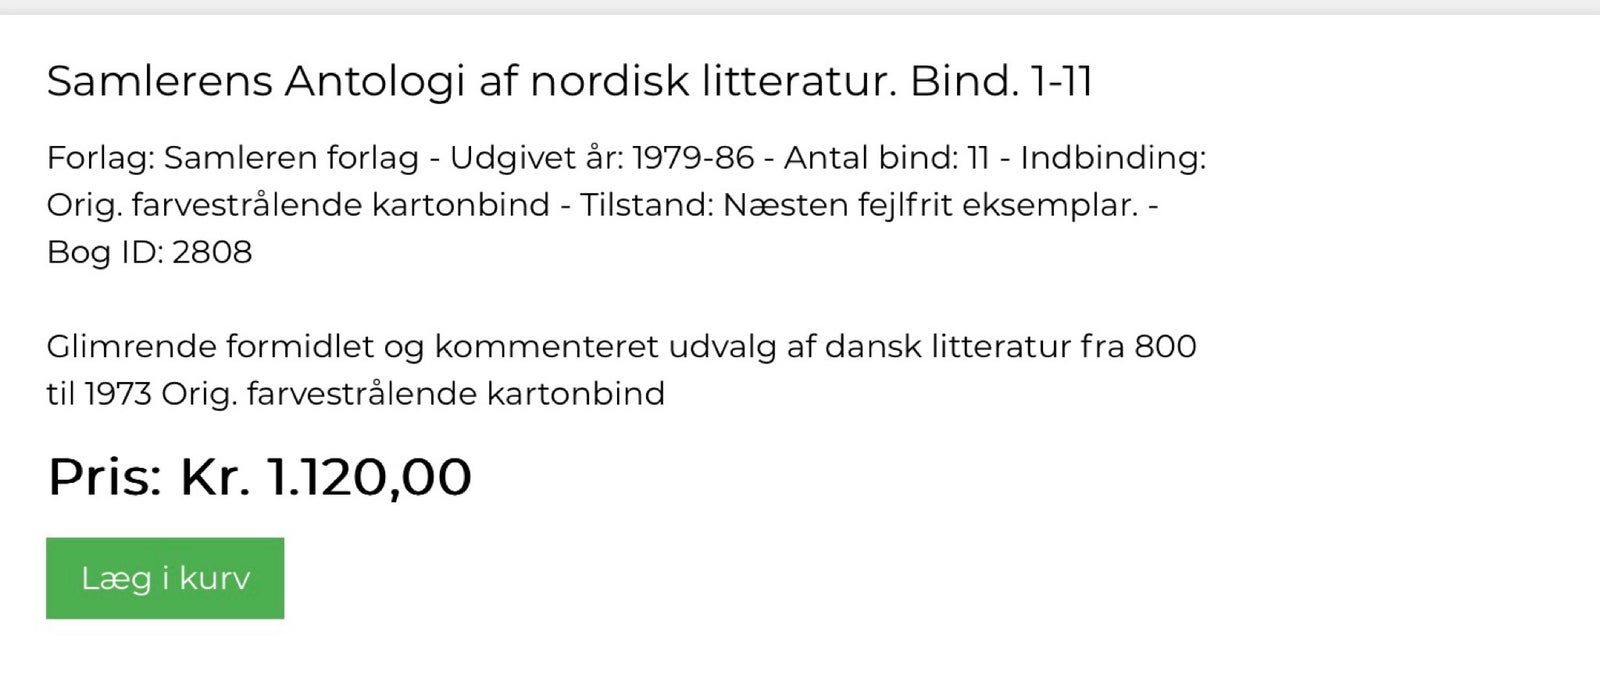 Samlerens Antologi, Sigurd Kværndrup m.fl